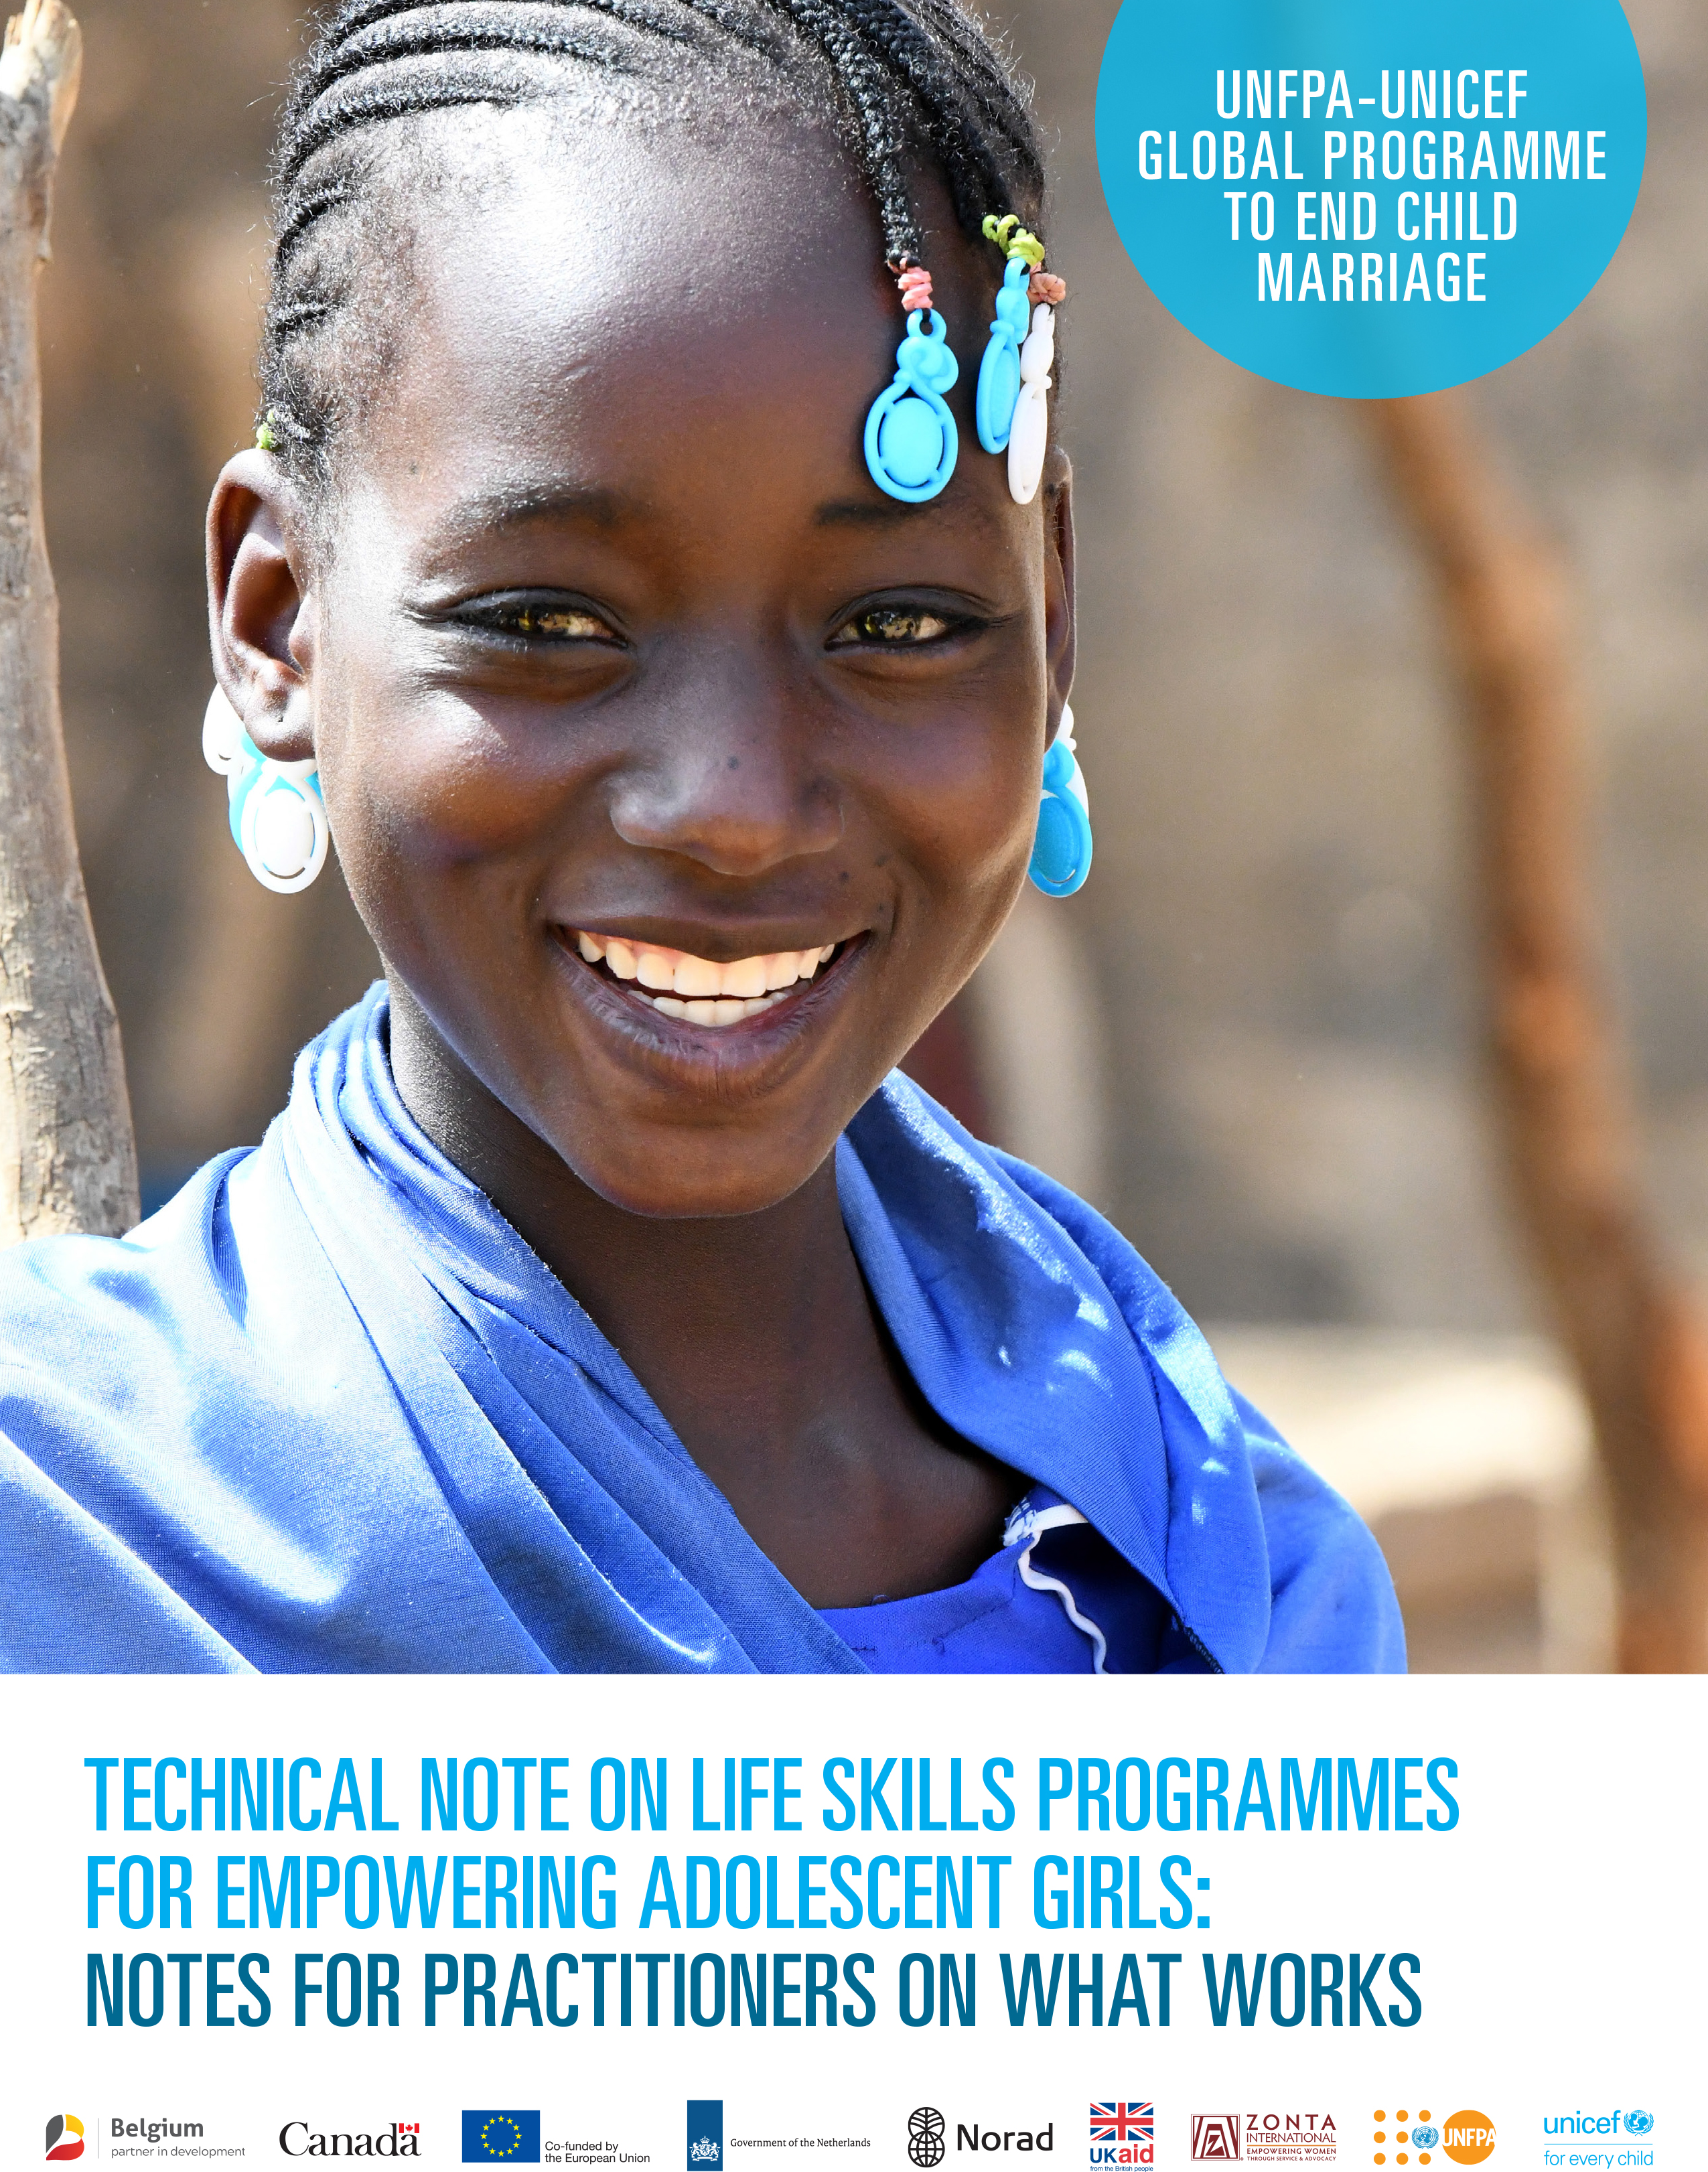 Nota técnica programas de habilidades para la vida para empoderar a niñas y adolescentes: notas para profesionales sobre lo que funciona bien